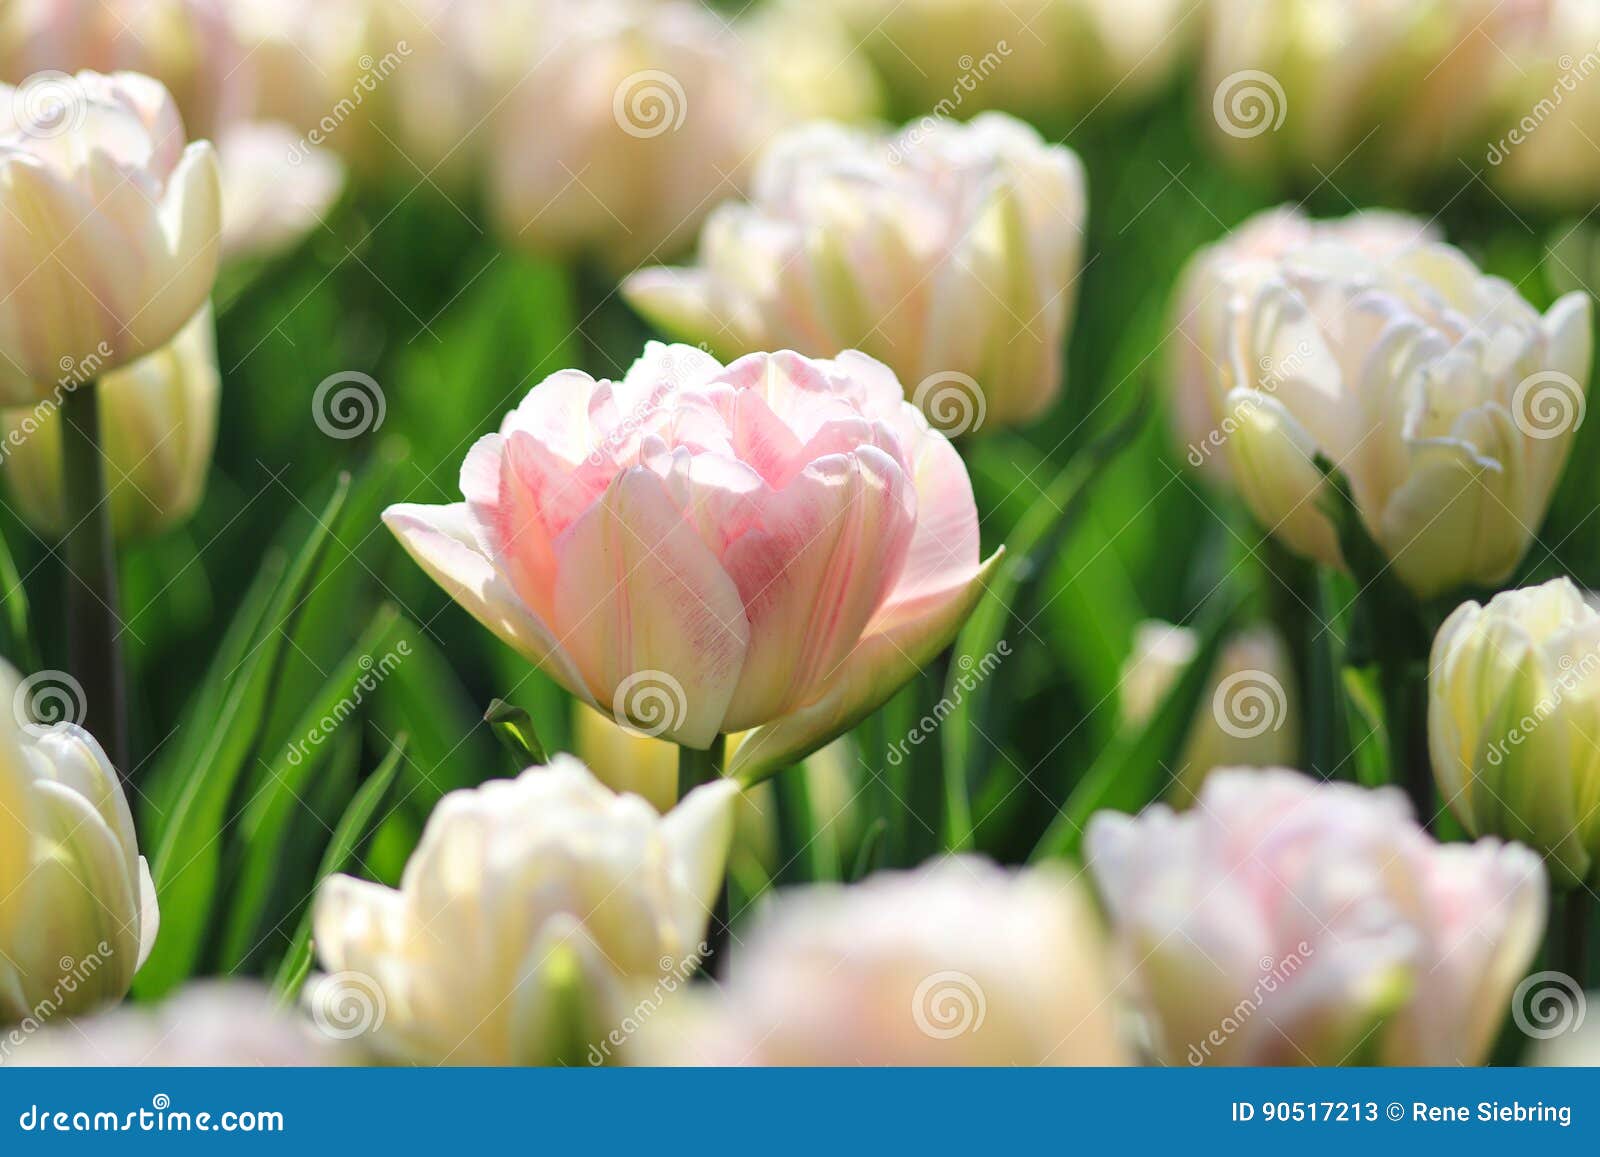 La Tulipe Blanche Avec Le Rose Accentue Dans Un Domaine Des Tulipes Blanches  Image stock - Image du isolement, stationnement: 90517213